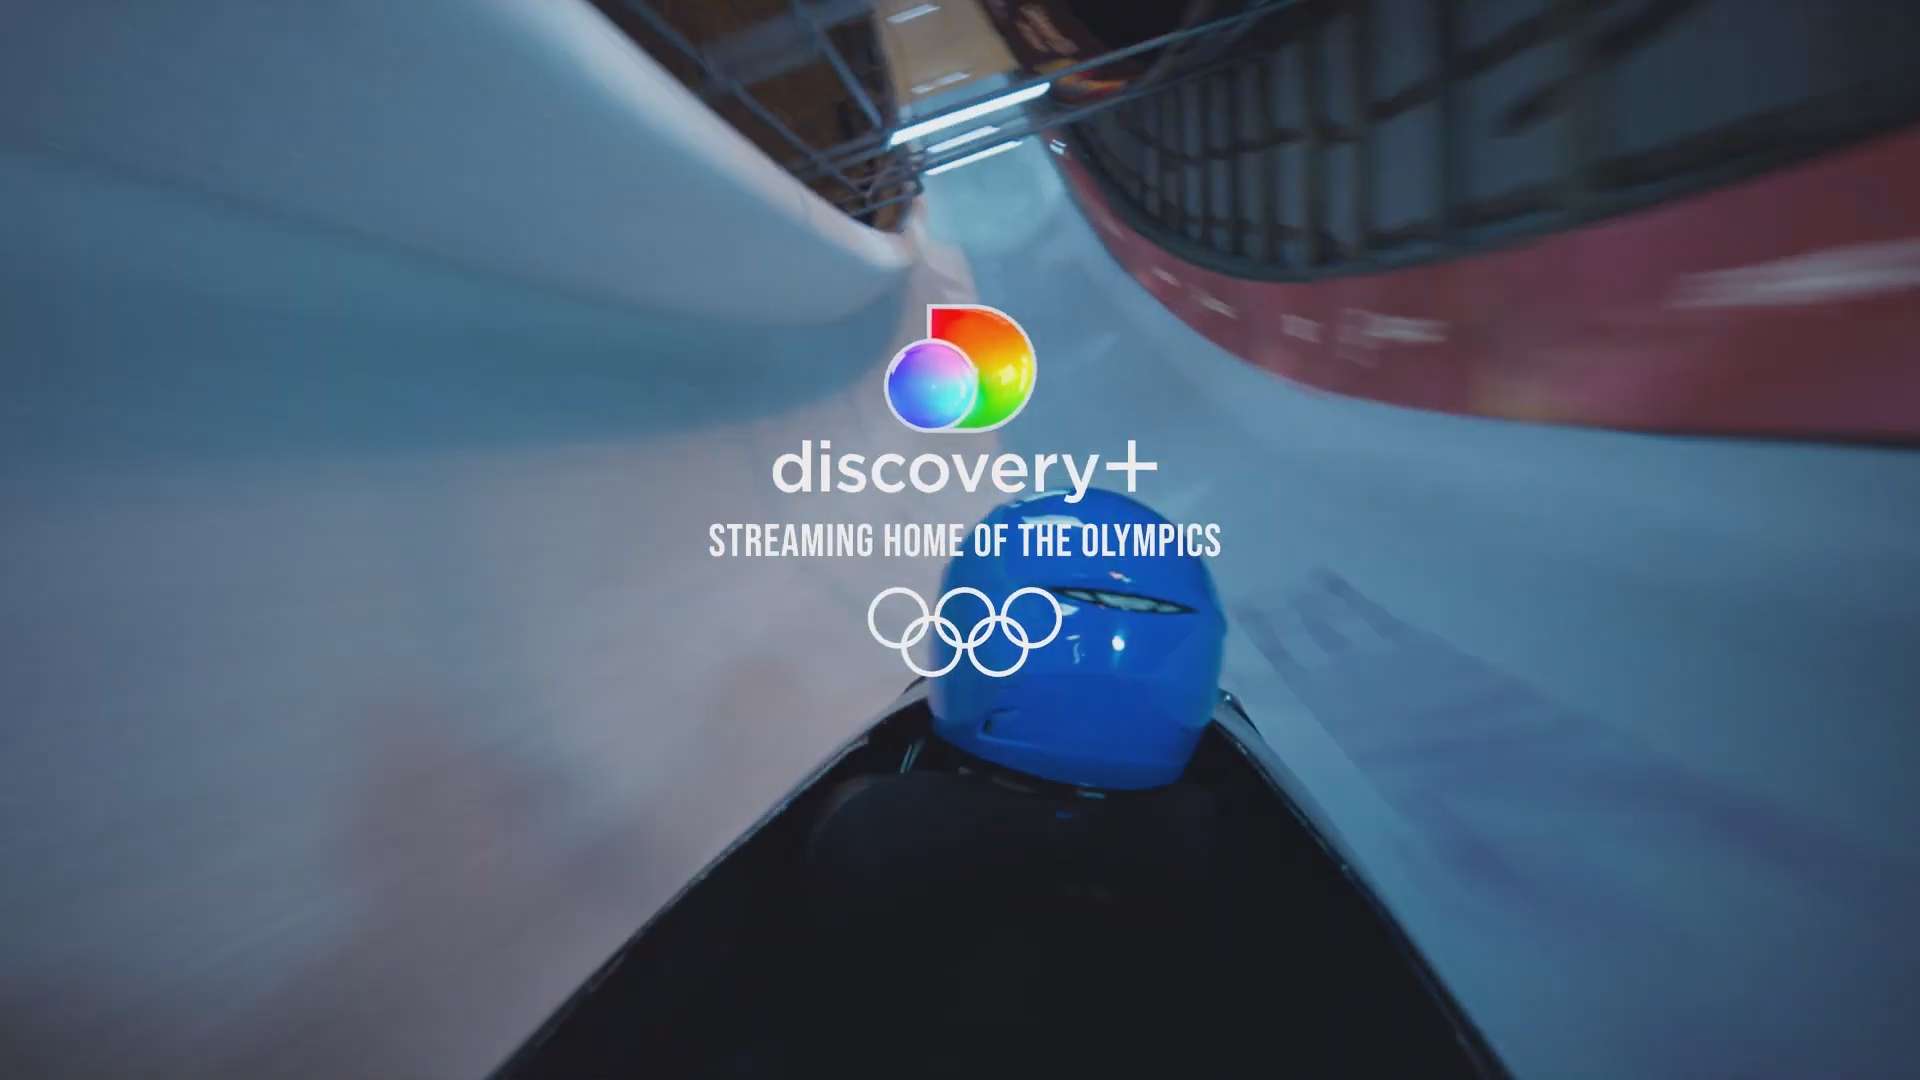 discovery+, successo per i Giochi Olimpici Pechino 2022 rispetto PyeongChang 2018